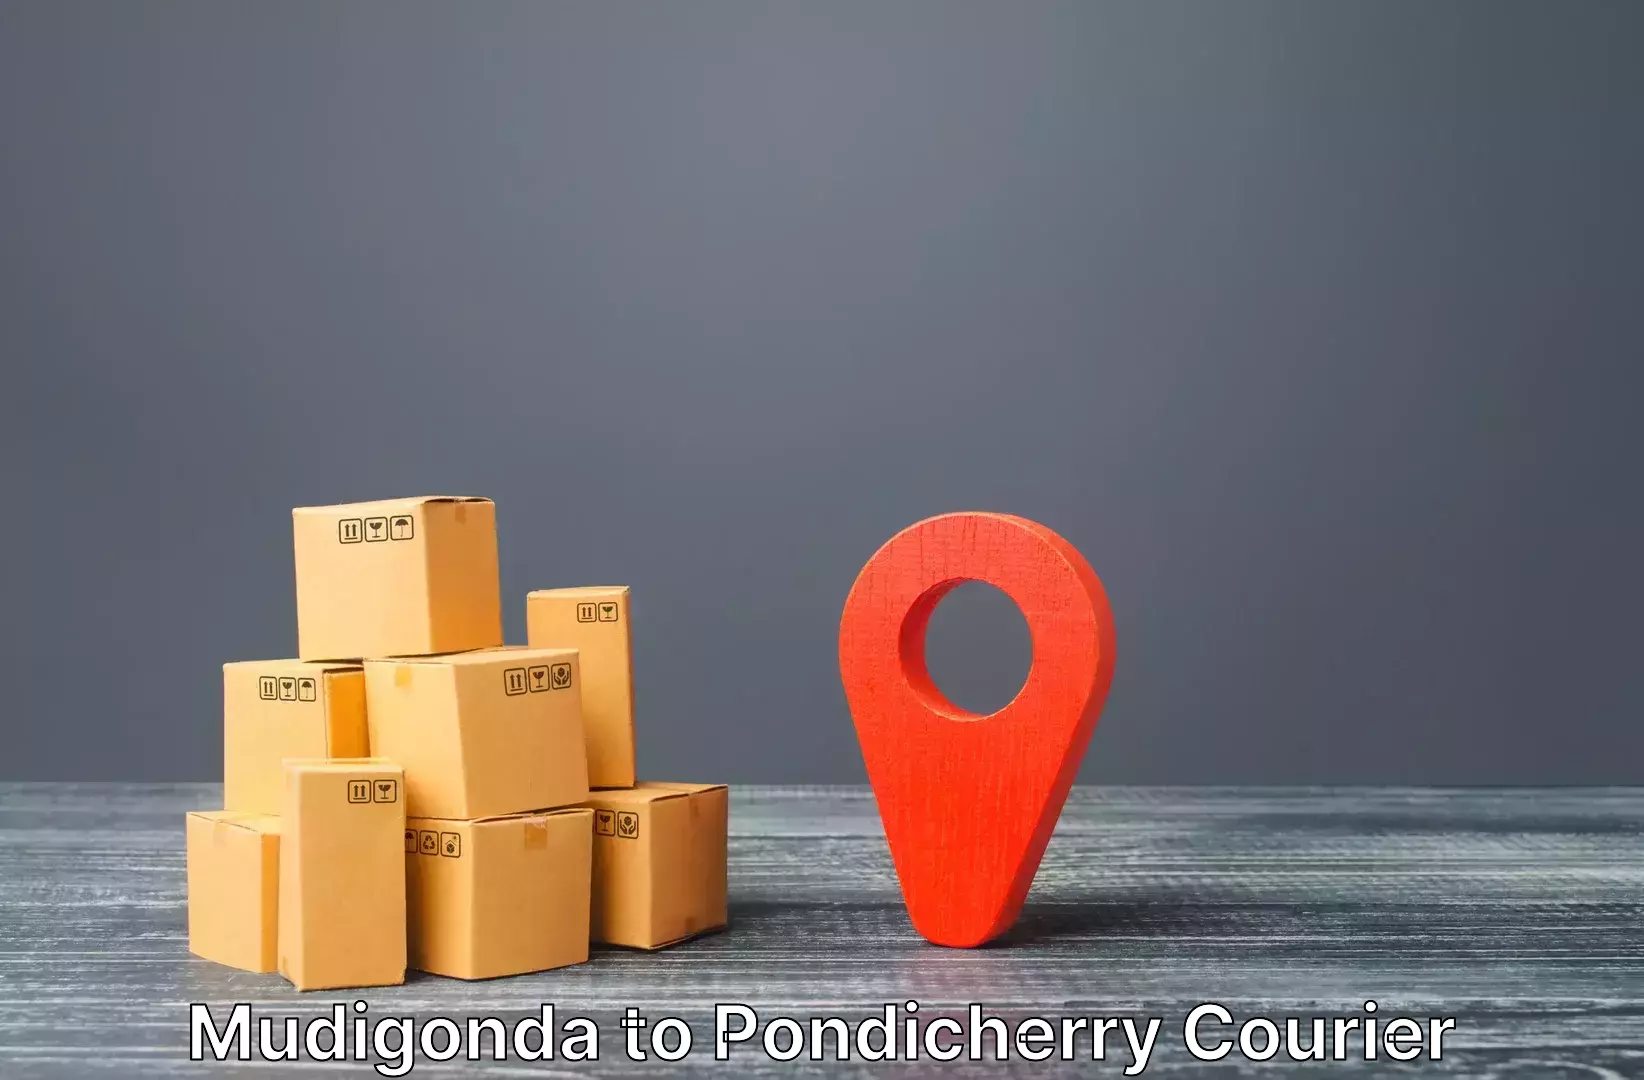 Luggage shipment tracking Mudigonda to Pondicherry University